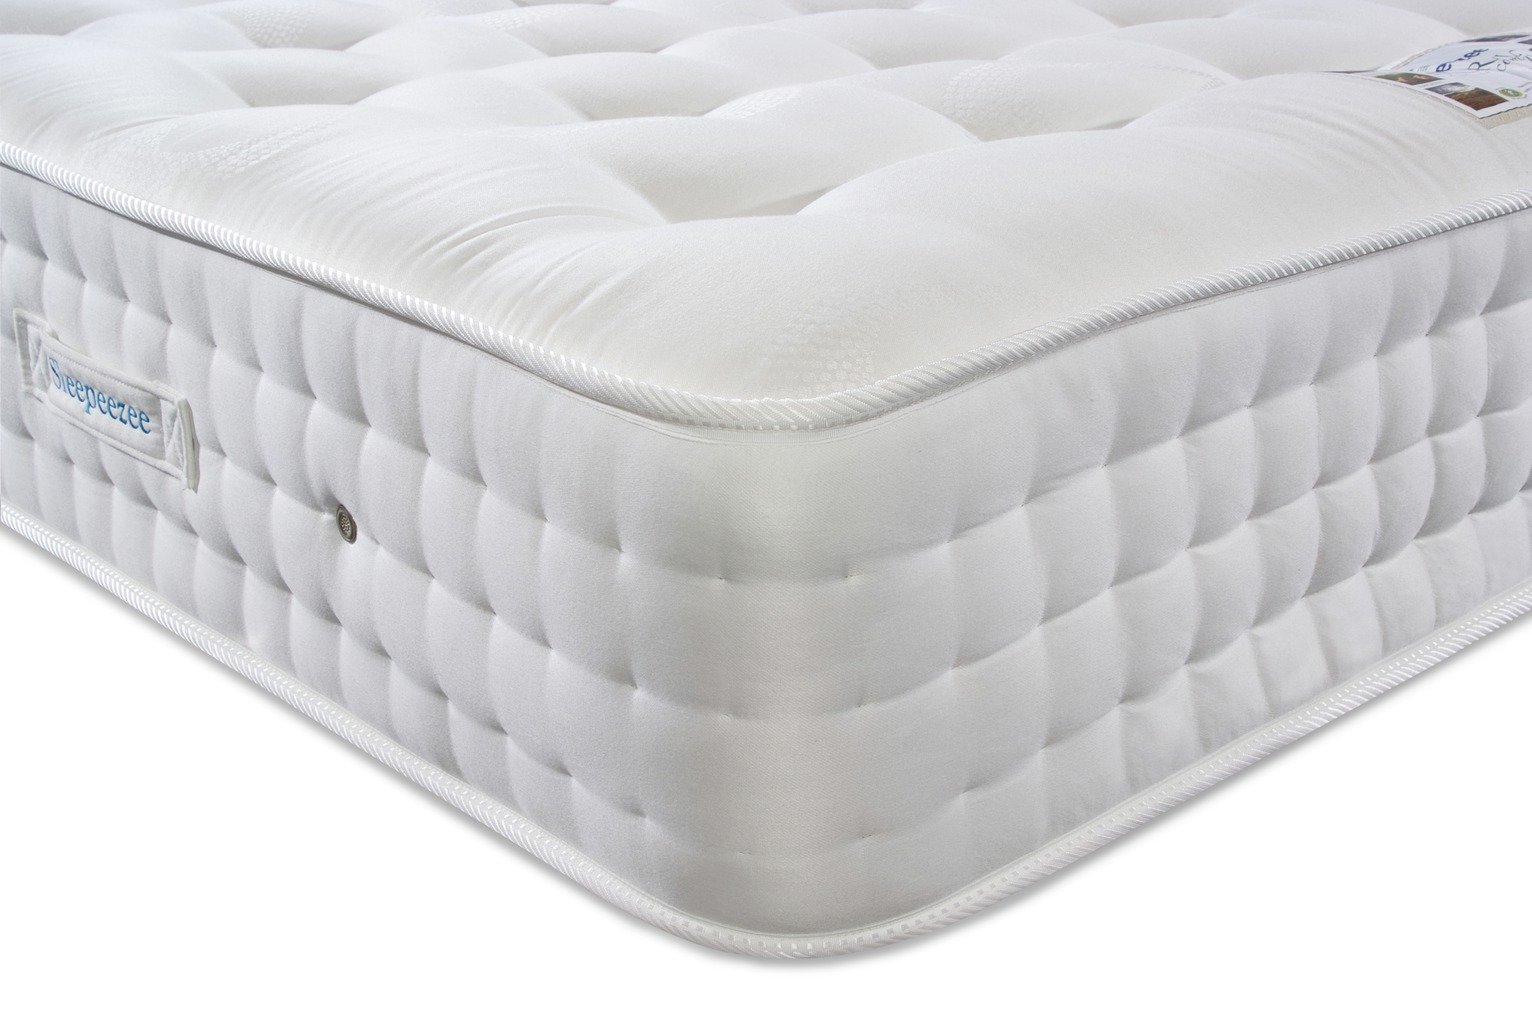 sleepeezee perfect dreamer mattress review